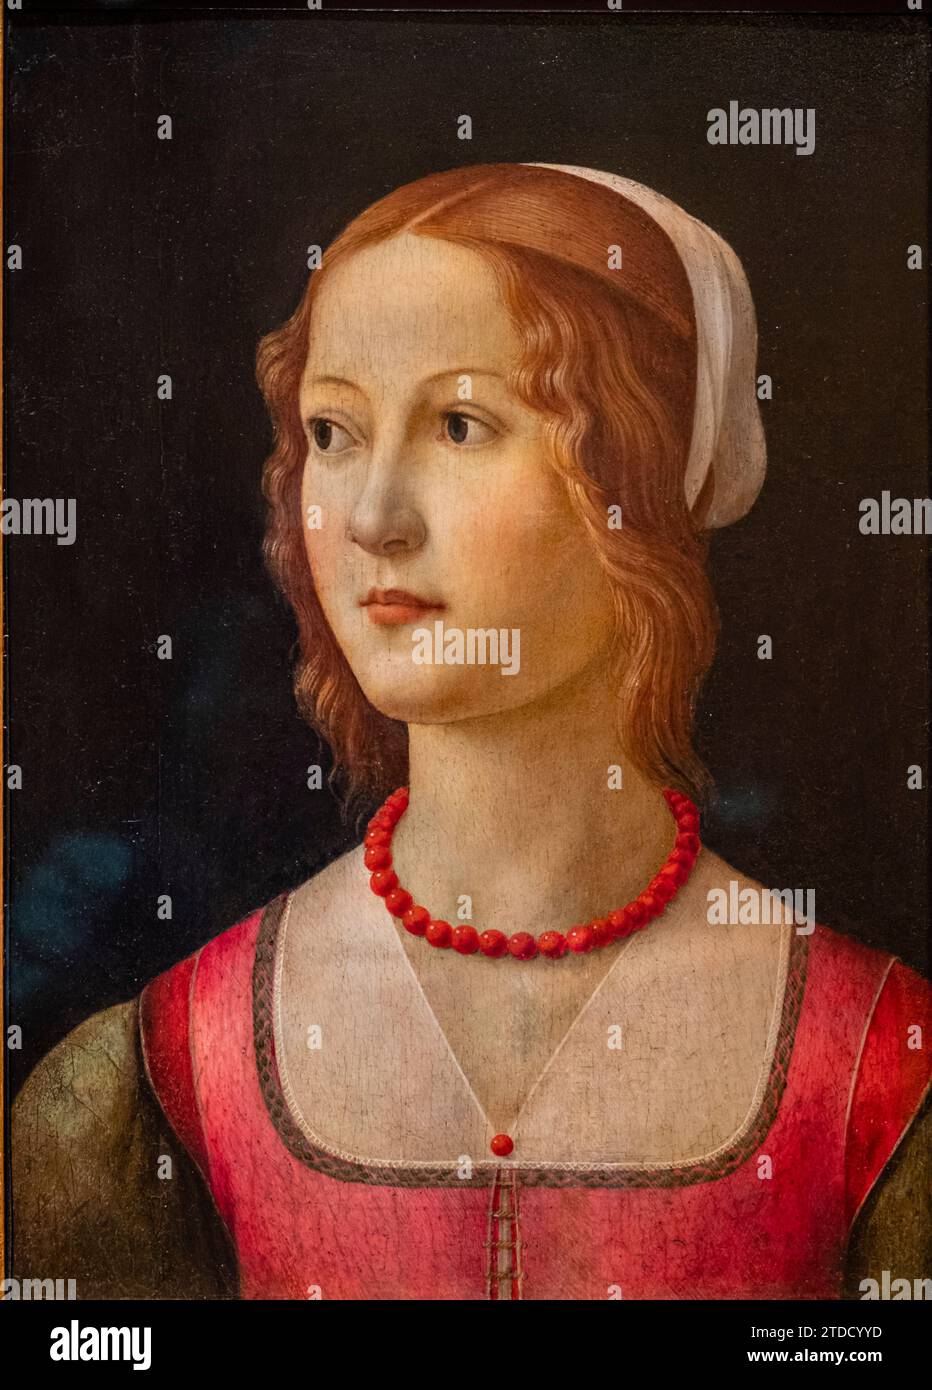 retrato de una joven, Ghirlandaio, Florencia, 1490, temple sobre madera, Fundación Calouste Gulbenkian,  («Fundação Calouste Gulbenkian»), Lisboa, Por Stock Photo